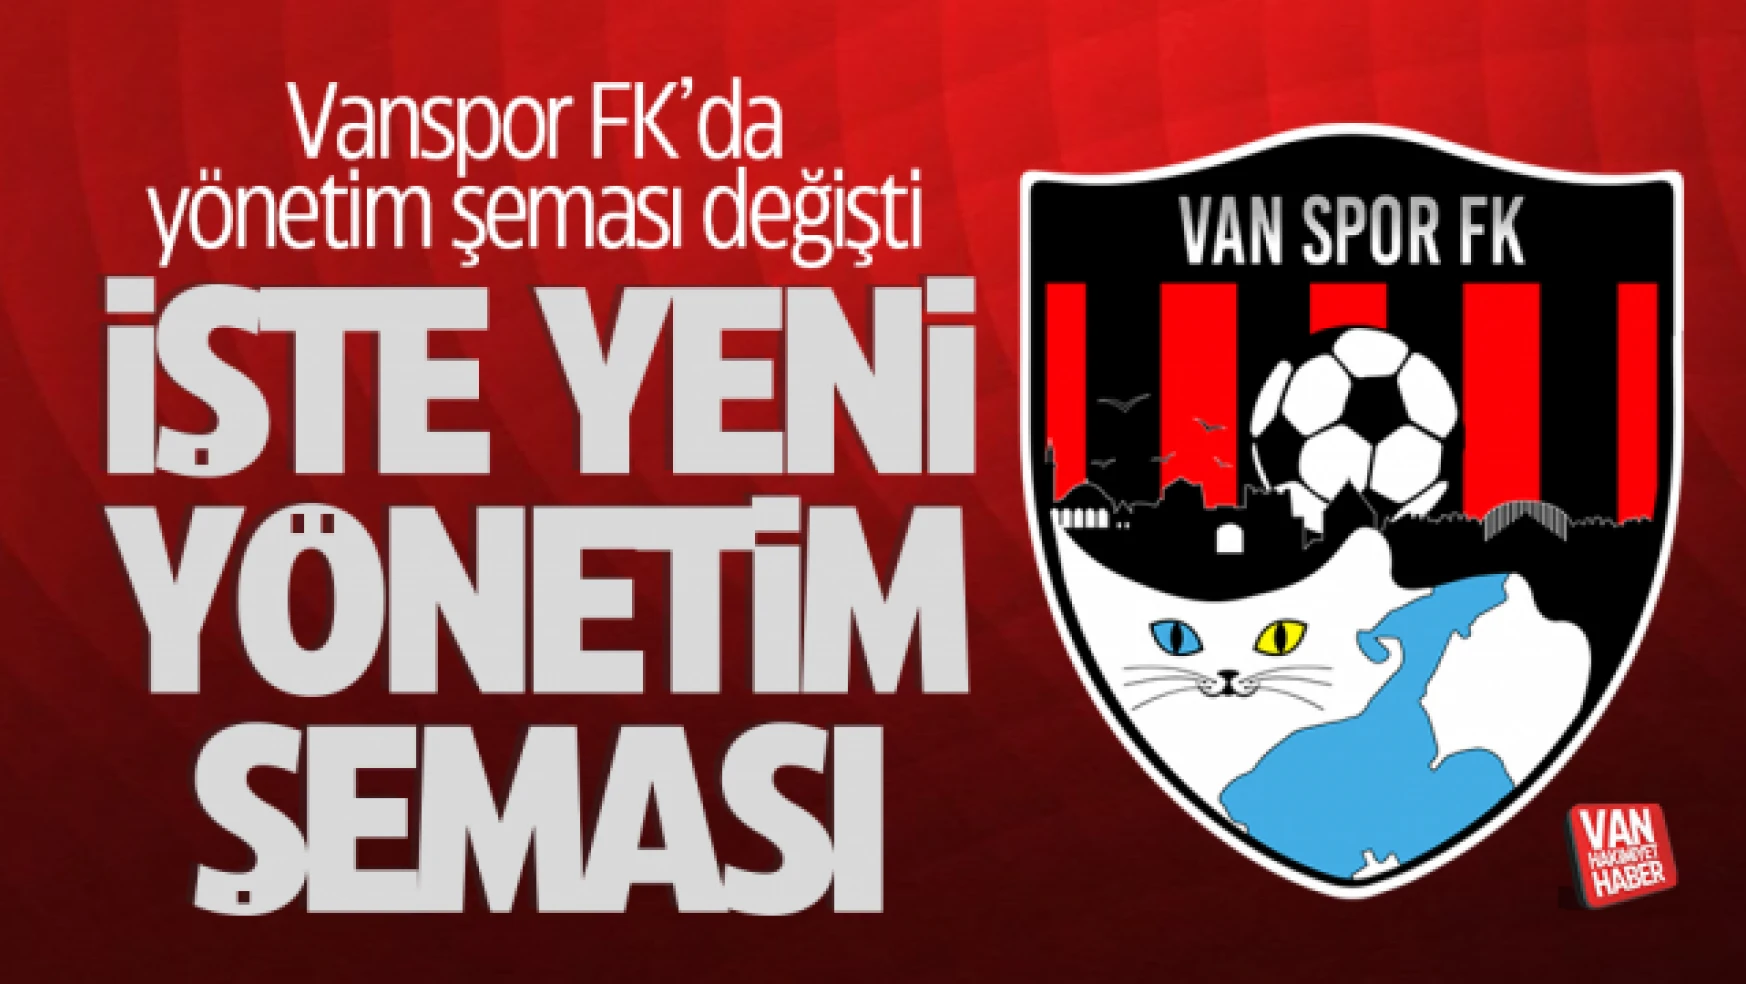 Vanspor FK yönetimi yeni görev dağılımı yaptı! İşte yeni görev şeması